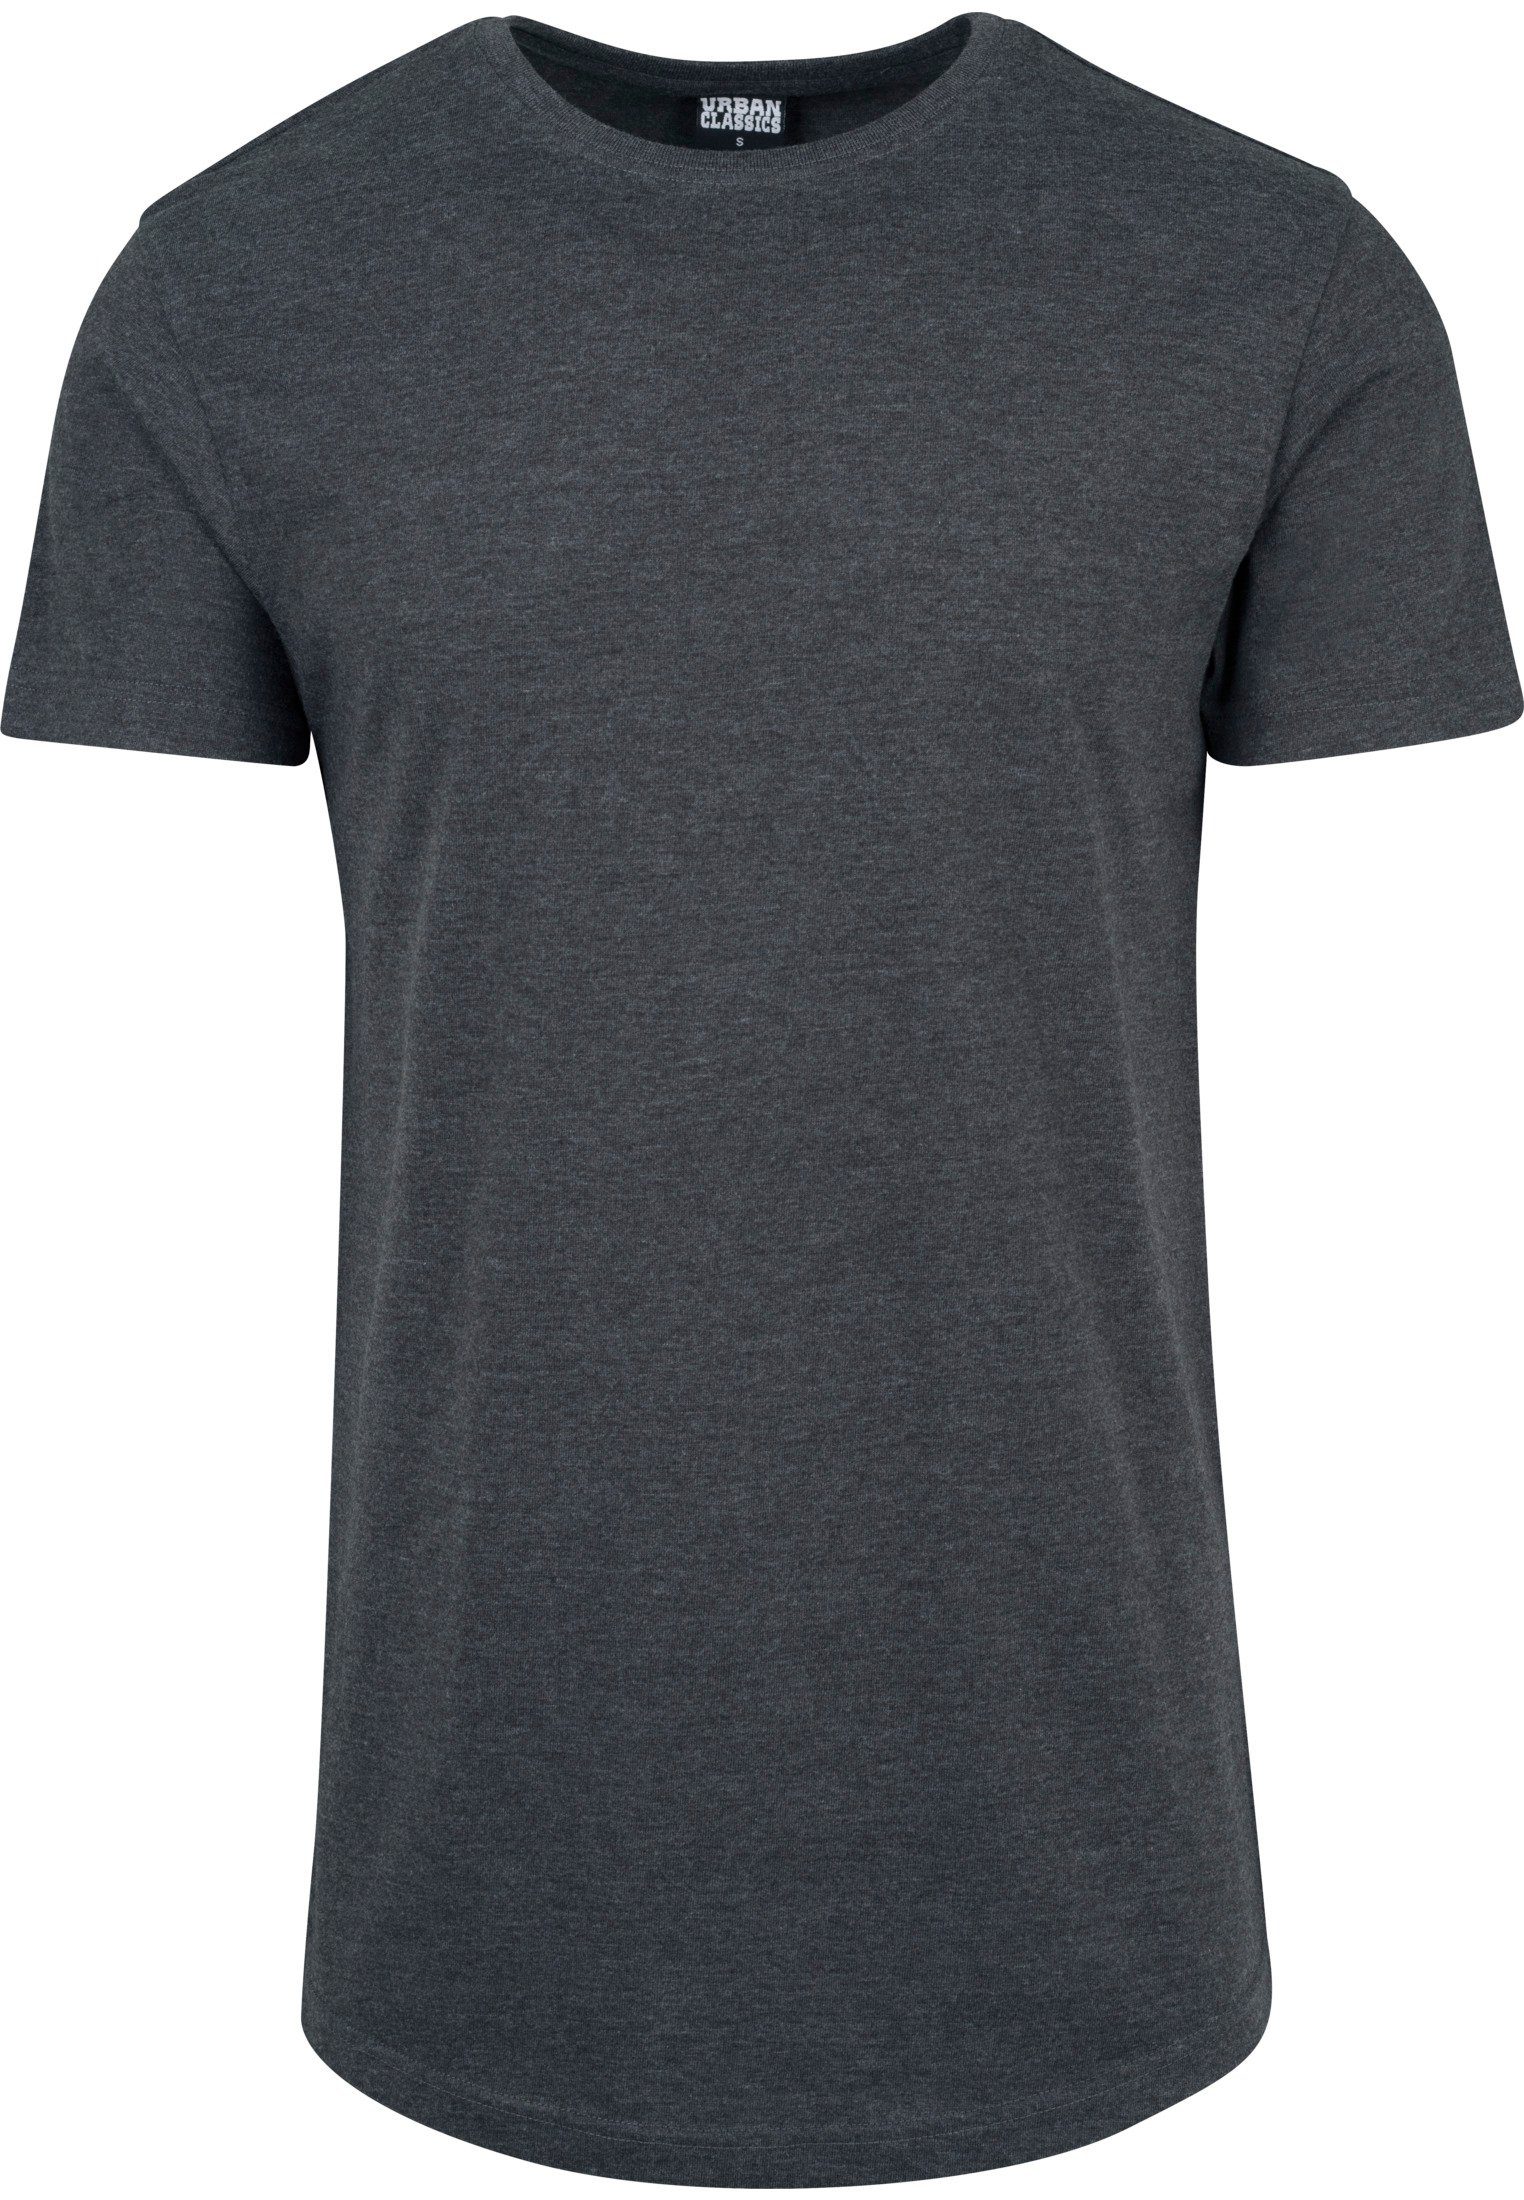 Melange charcoal CLASSICS Long T-Shirt URBAN TB1767